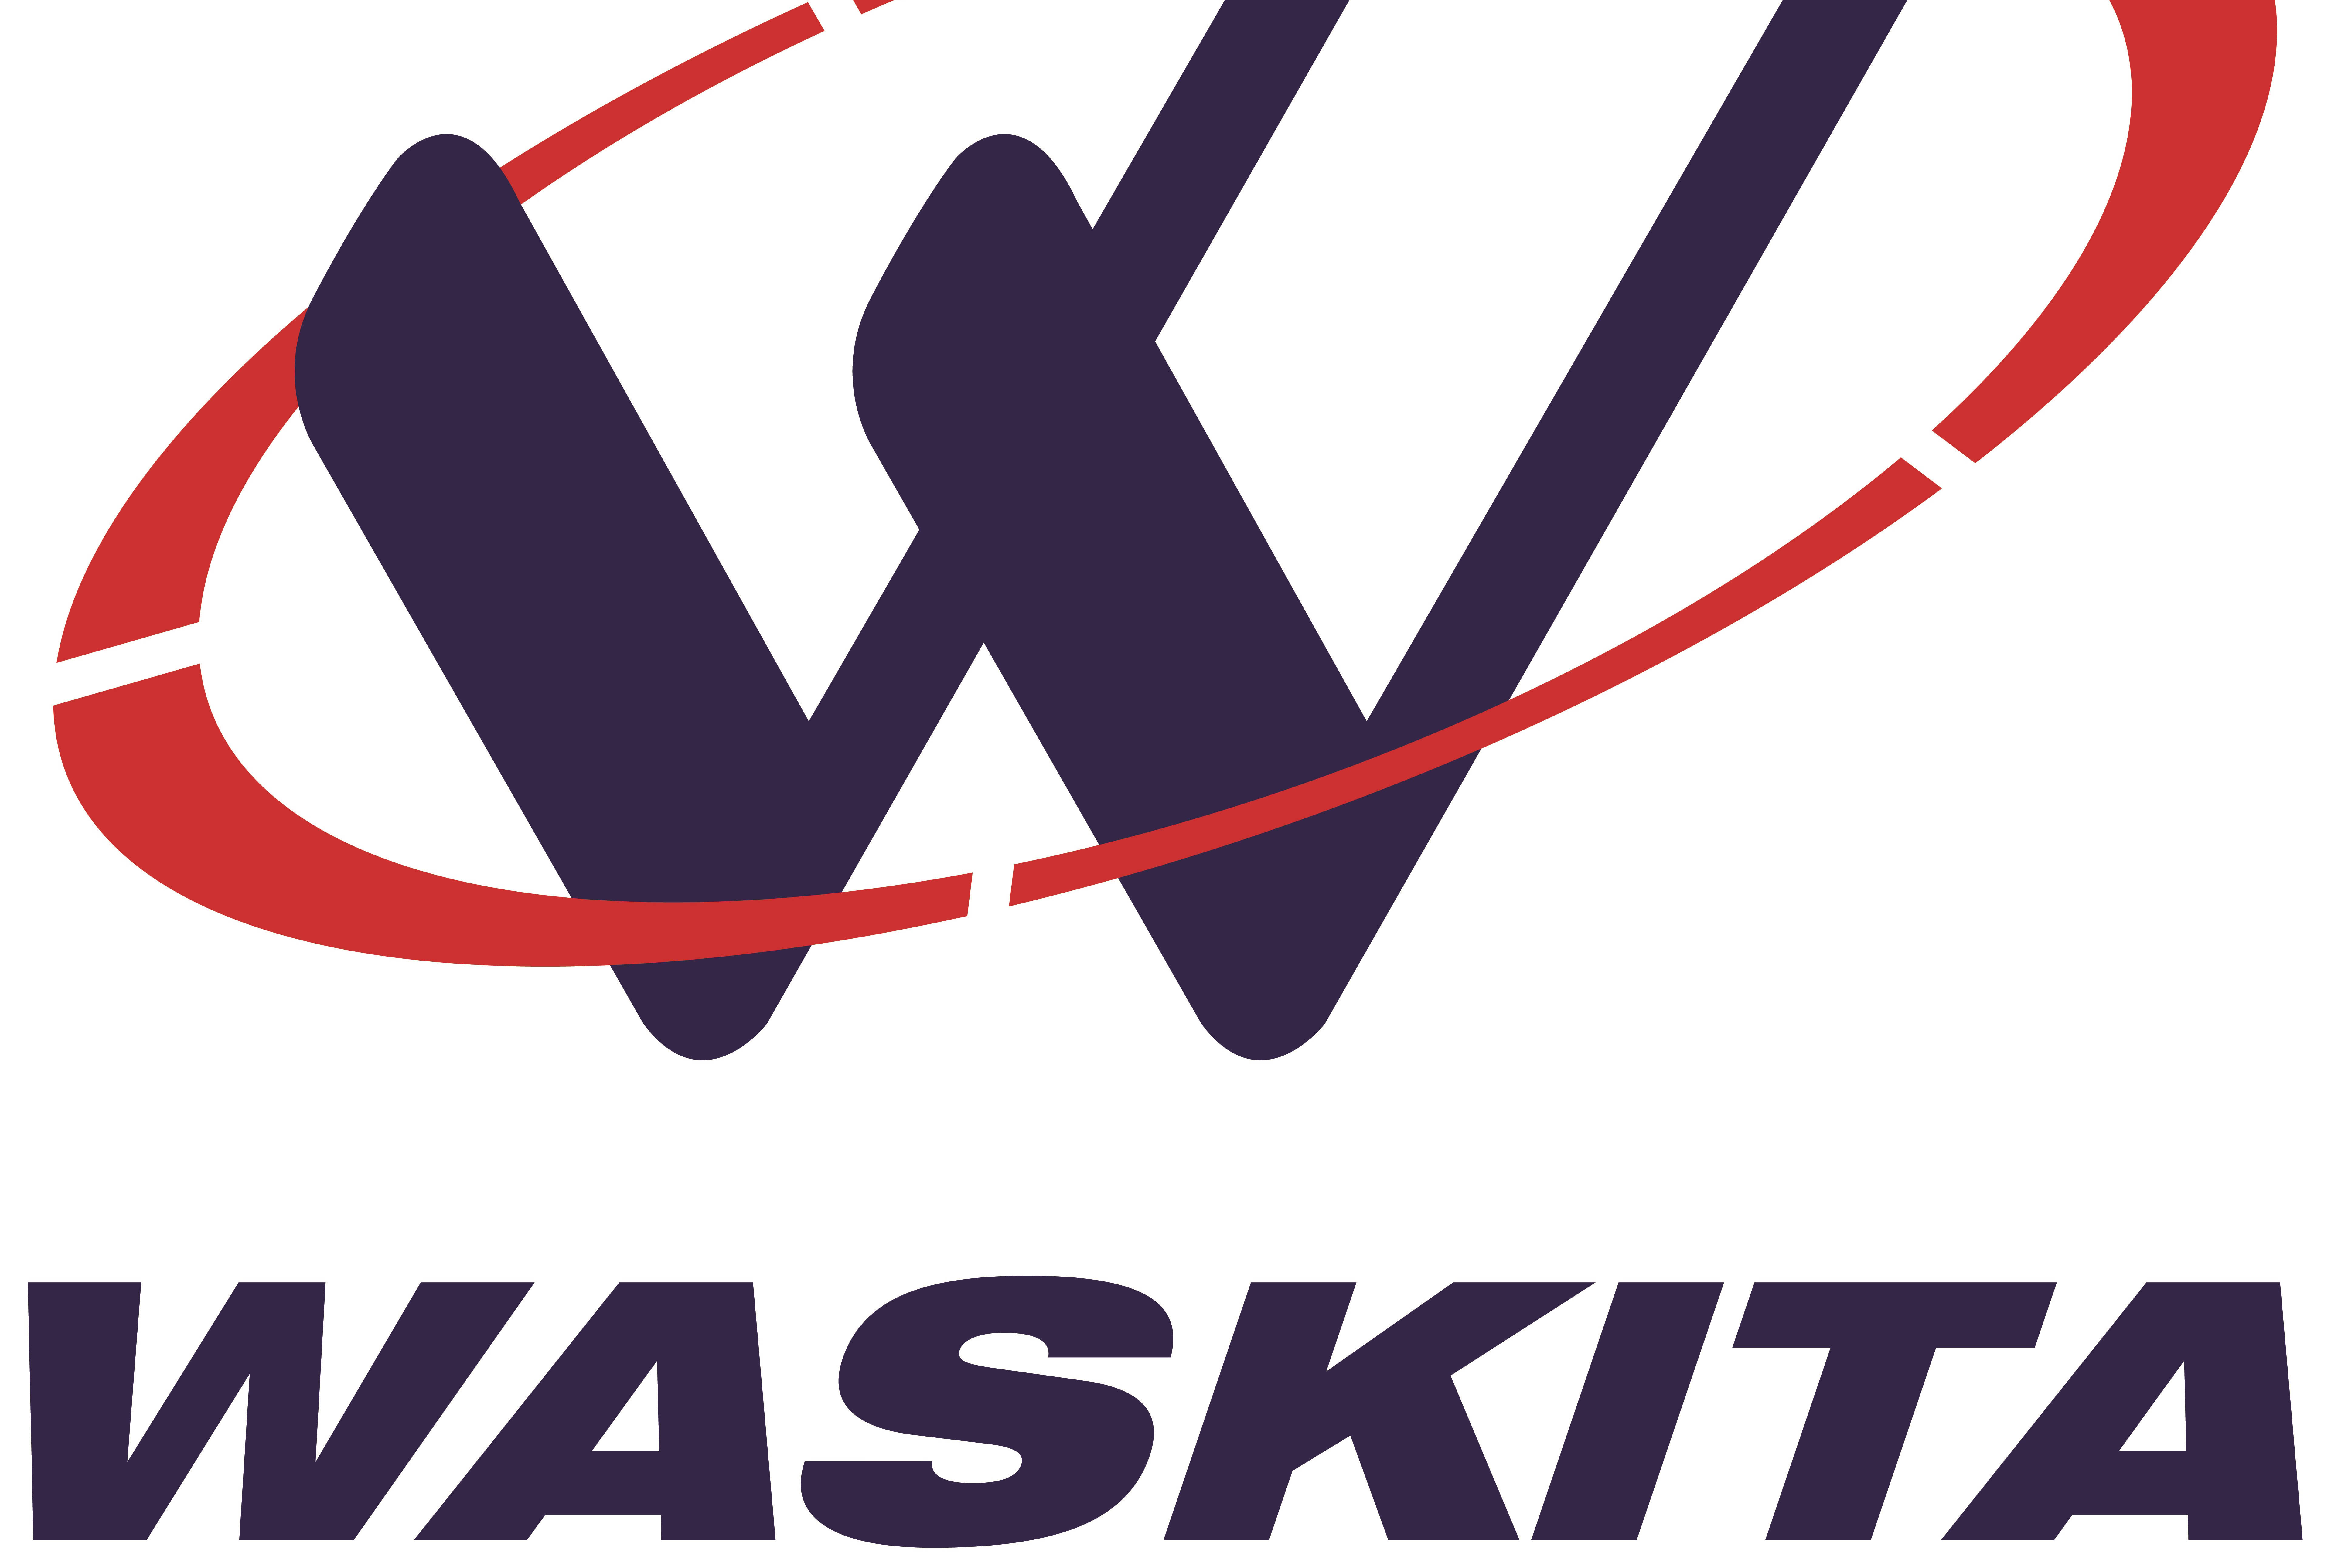 Logo Waskita